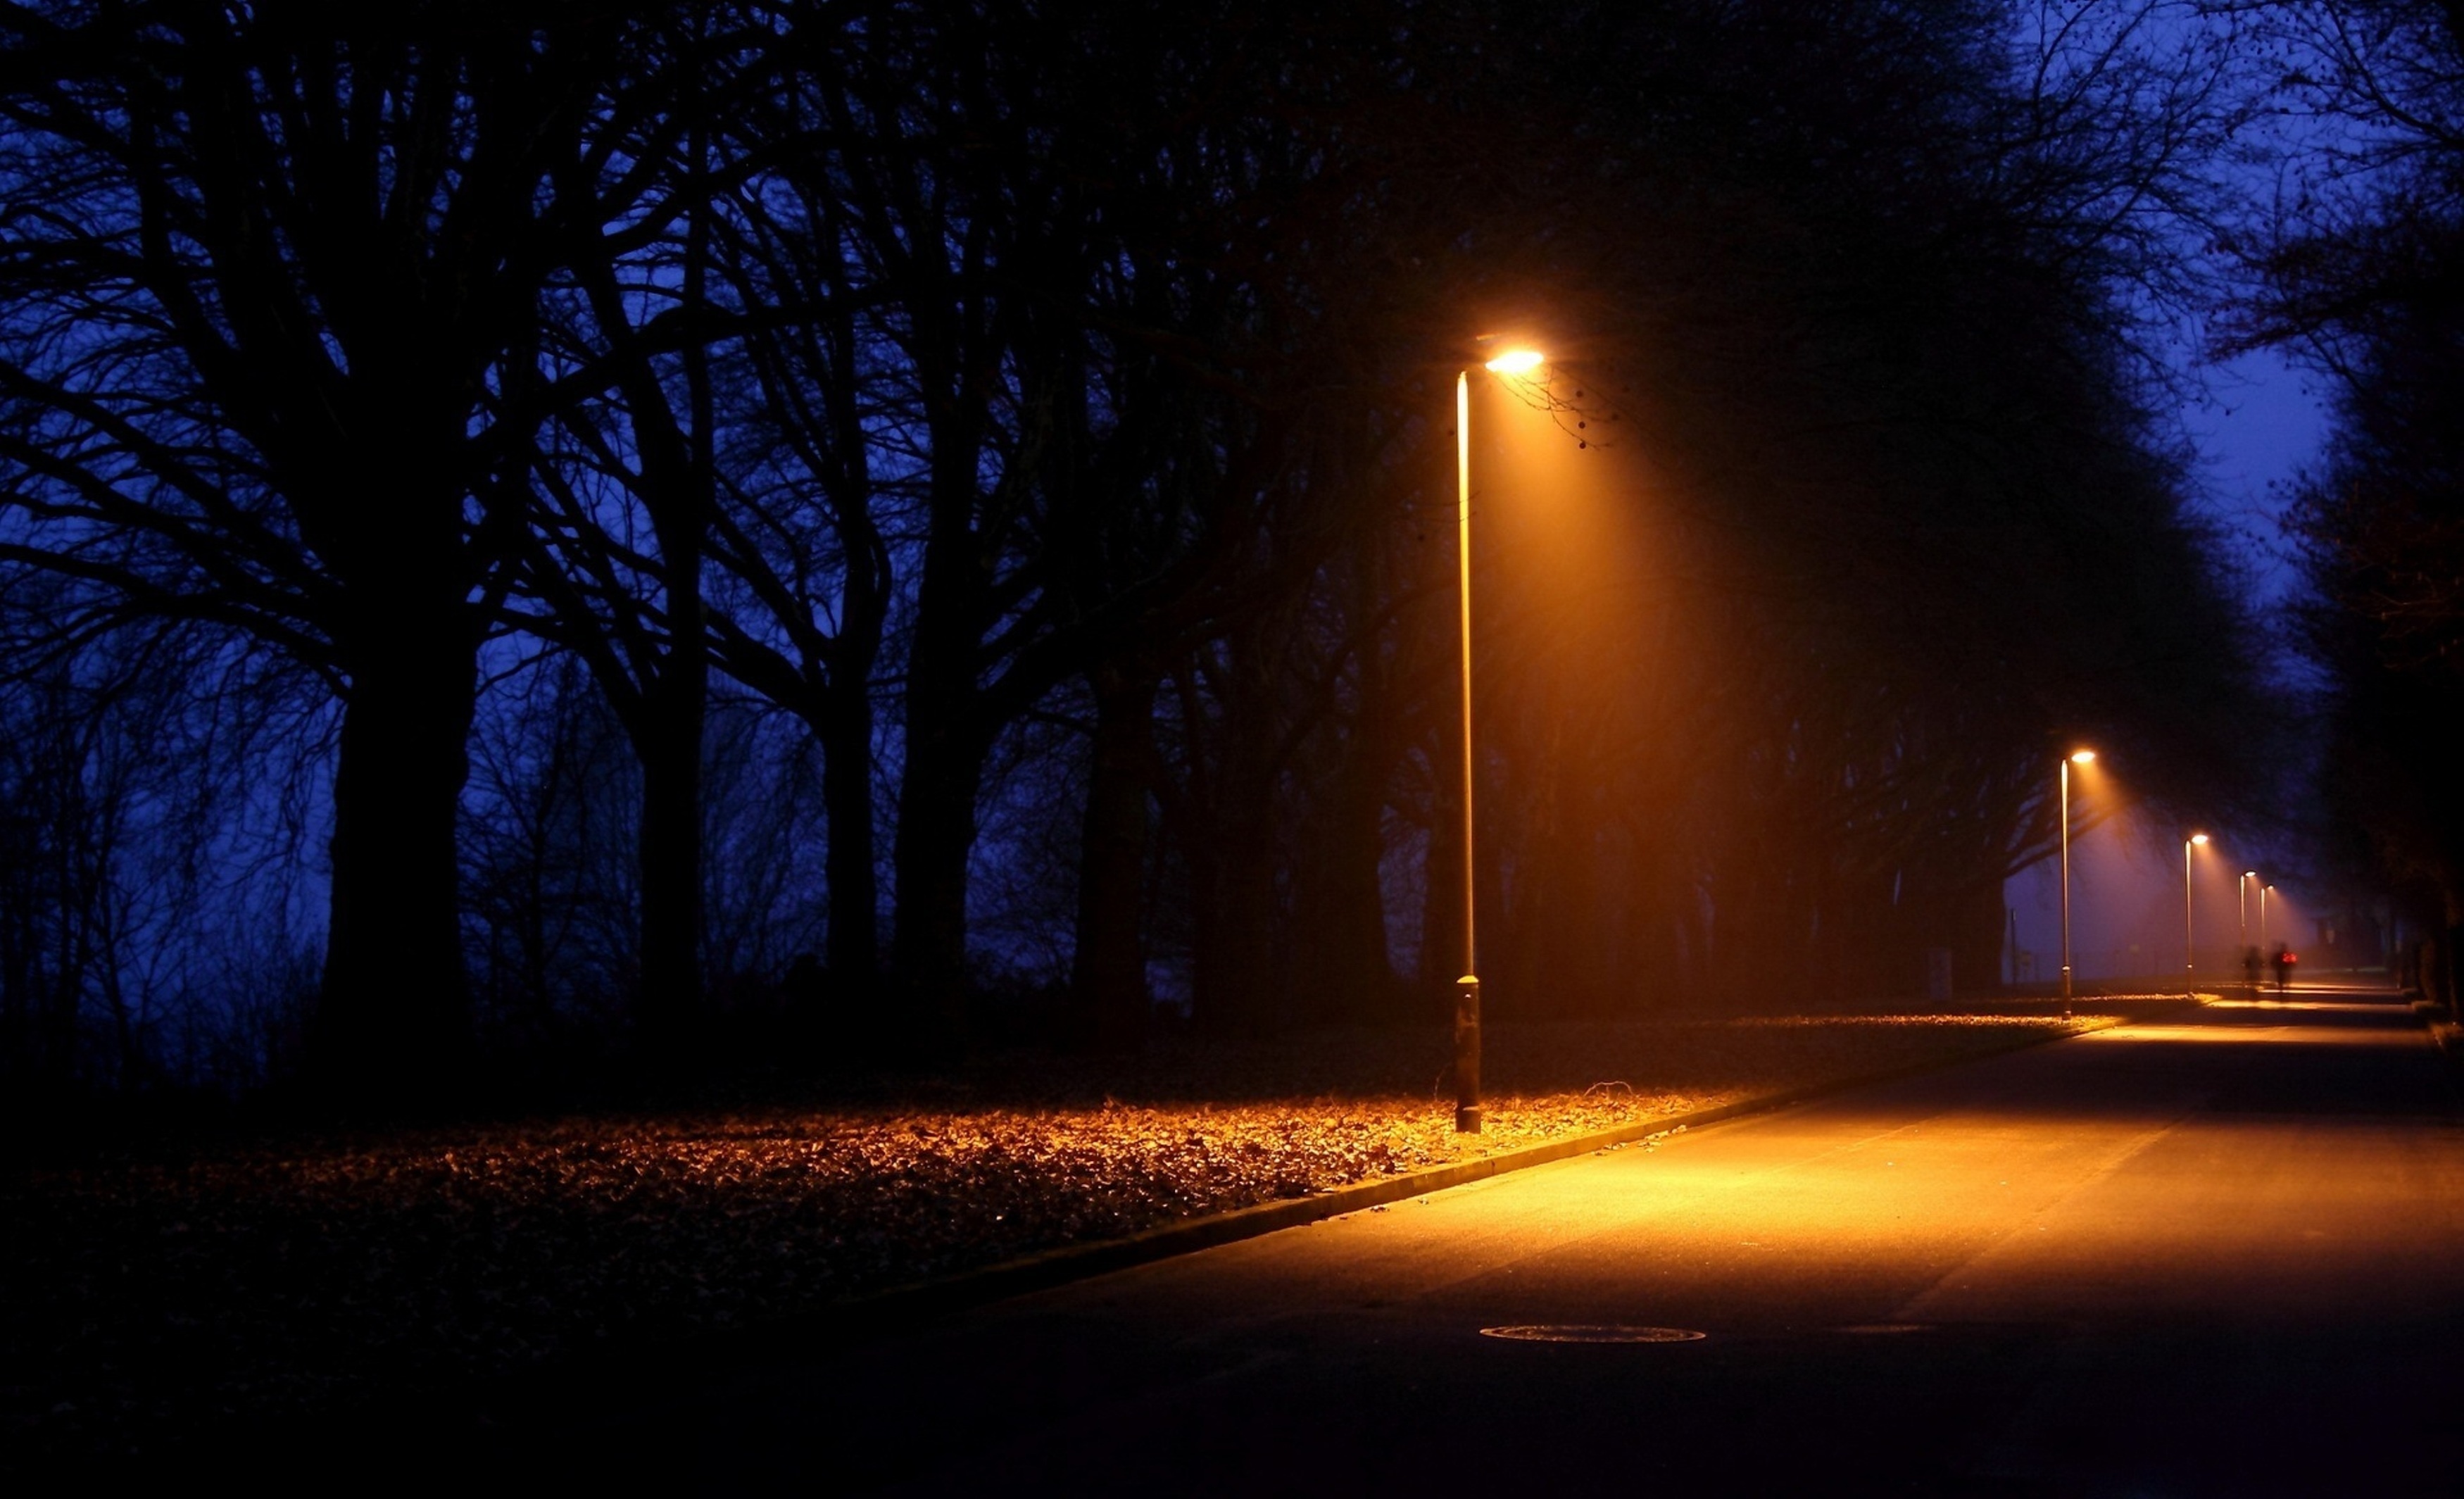 Сток света. Ночная улица с фонарями. Фонарь ночью. Ночные фонари. Ночной парк с фонарями.